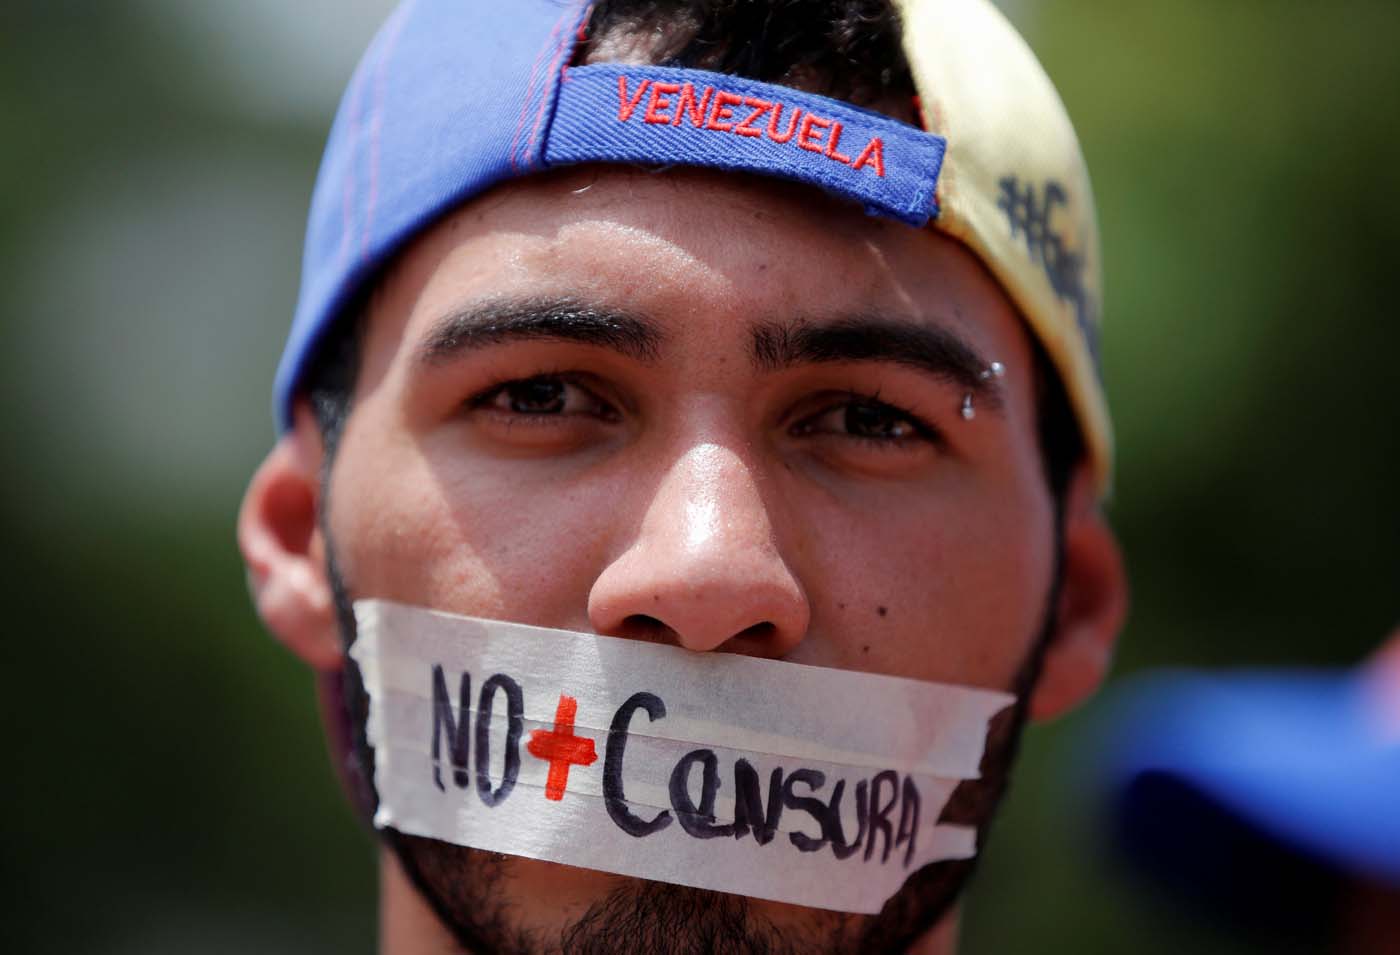 A días del show electoral, Maduro intensifica la censura: AN debatió sobre arremetida del régimen a medios de comunicación